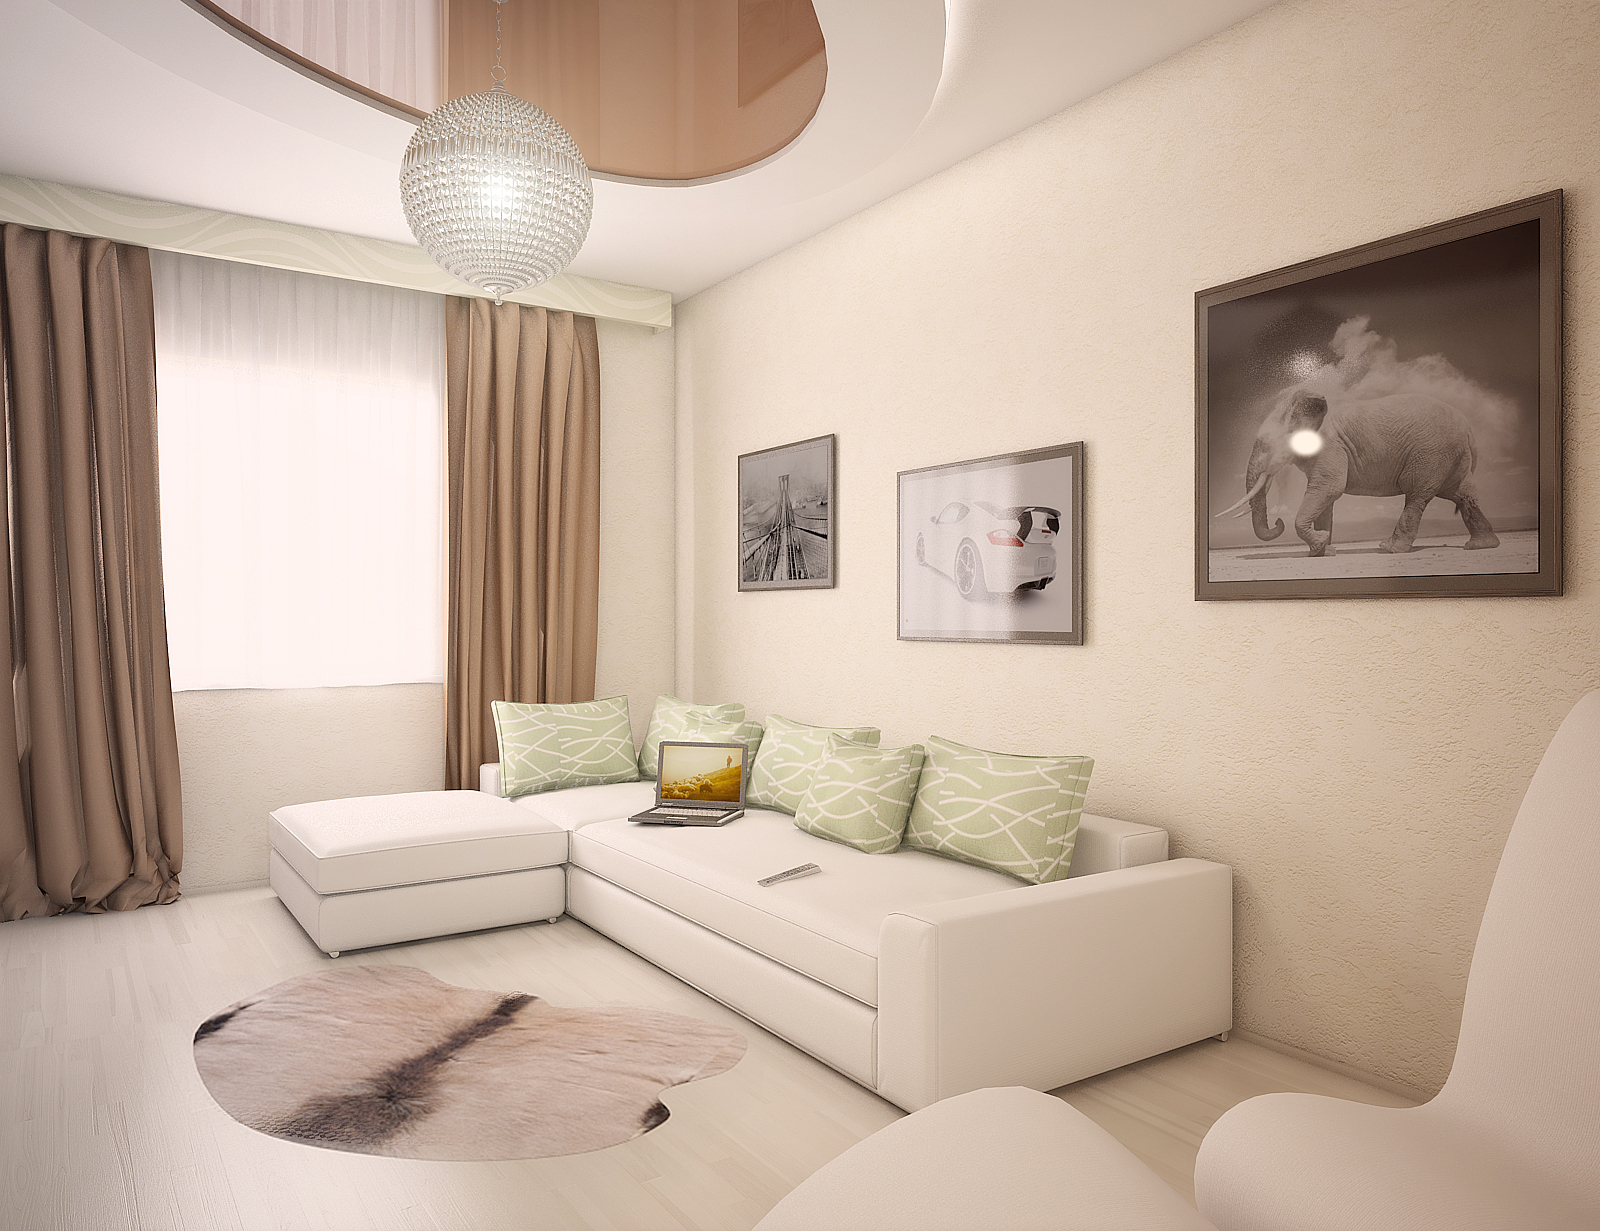 apartamento com sofá de canto branco